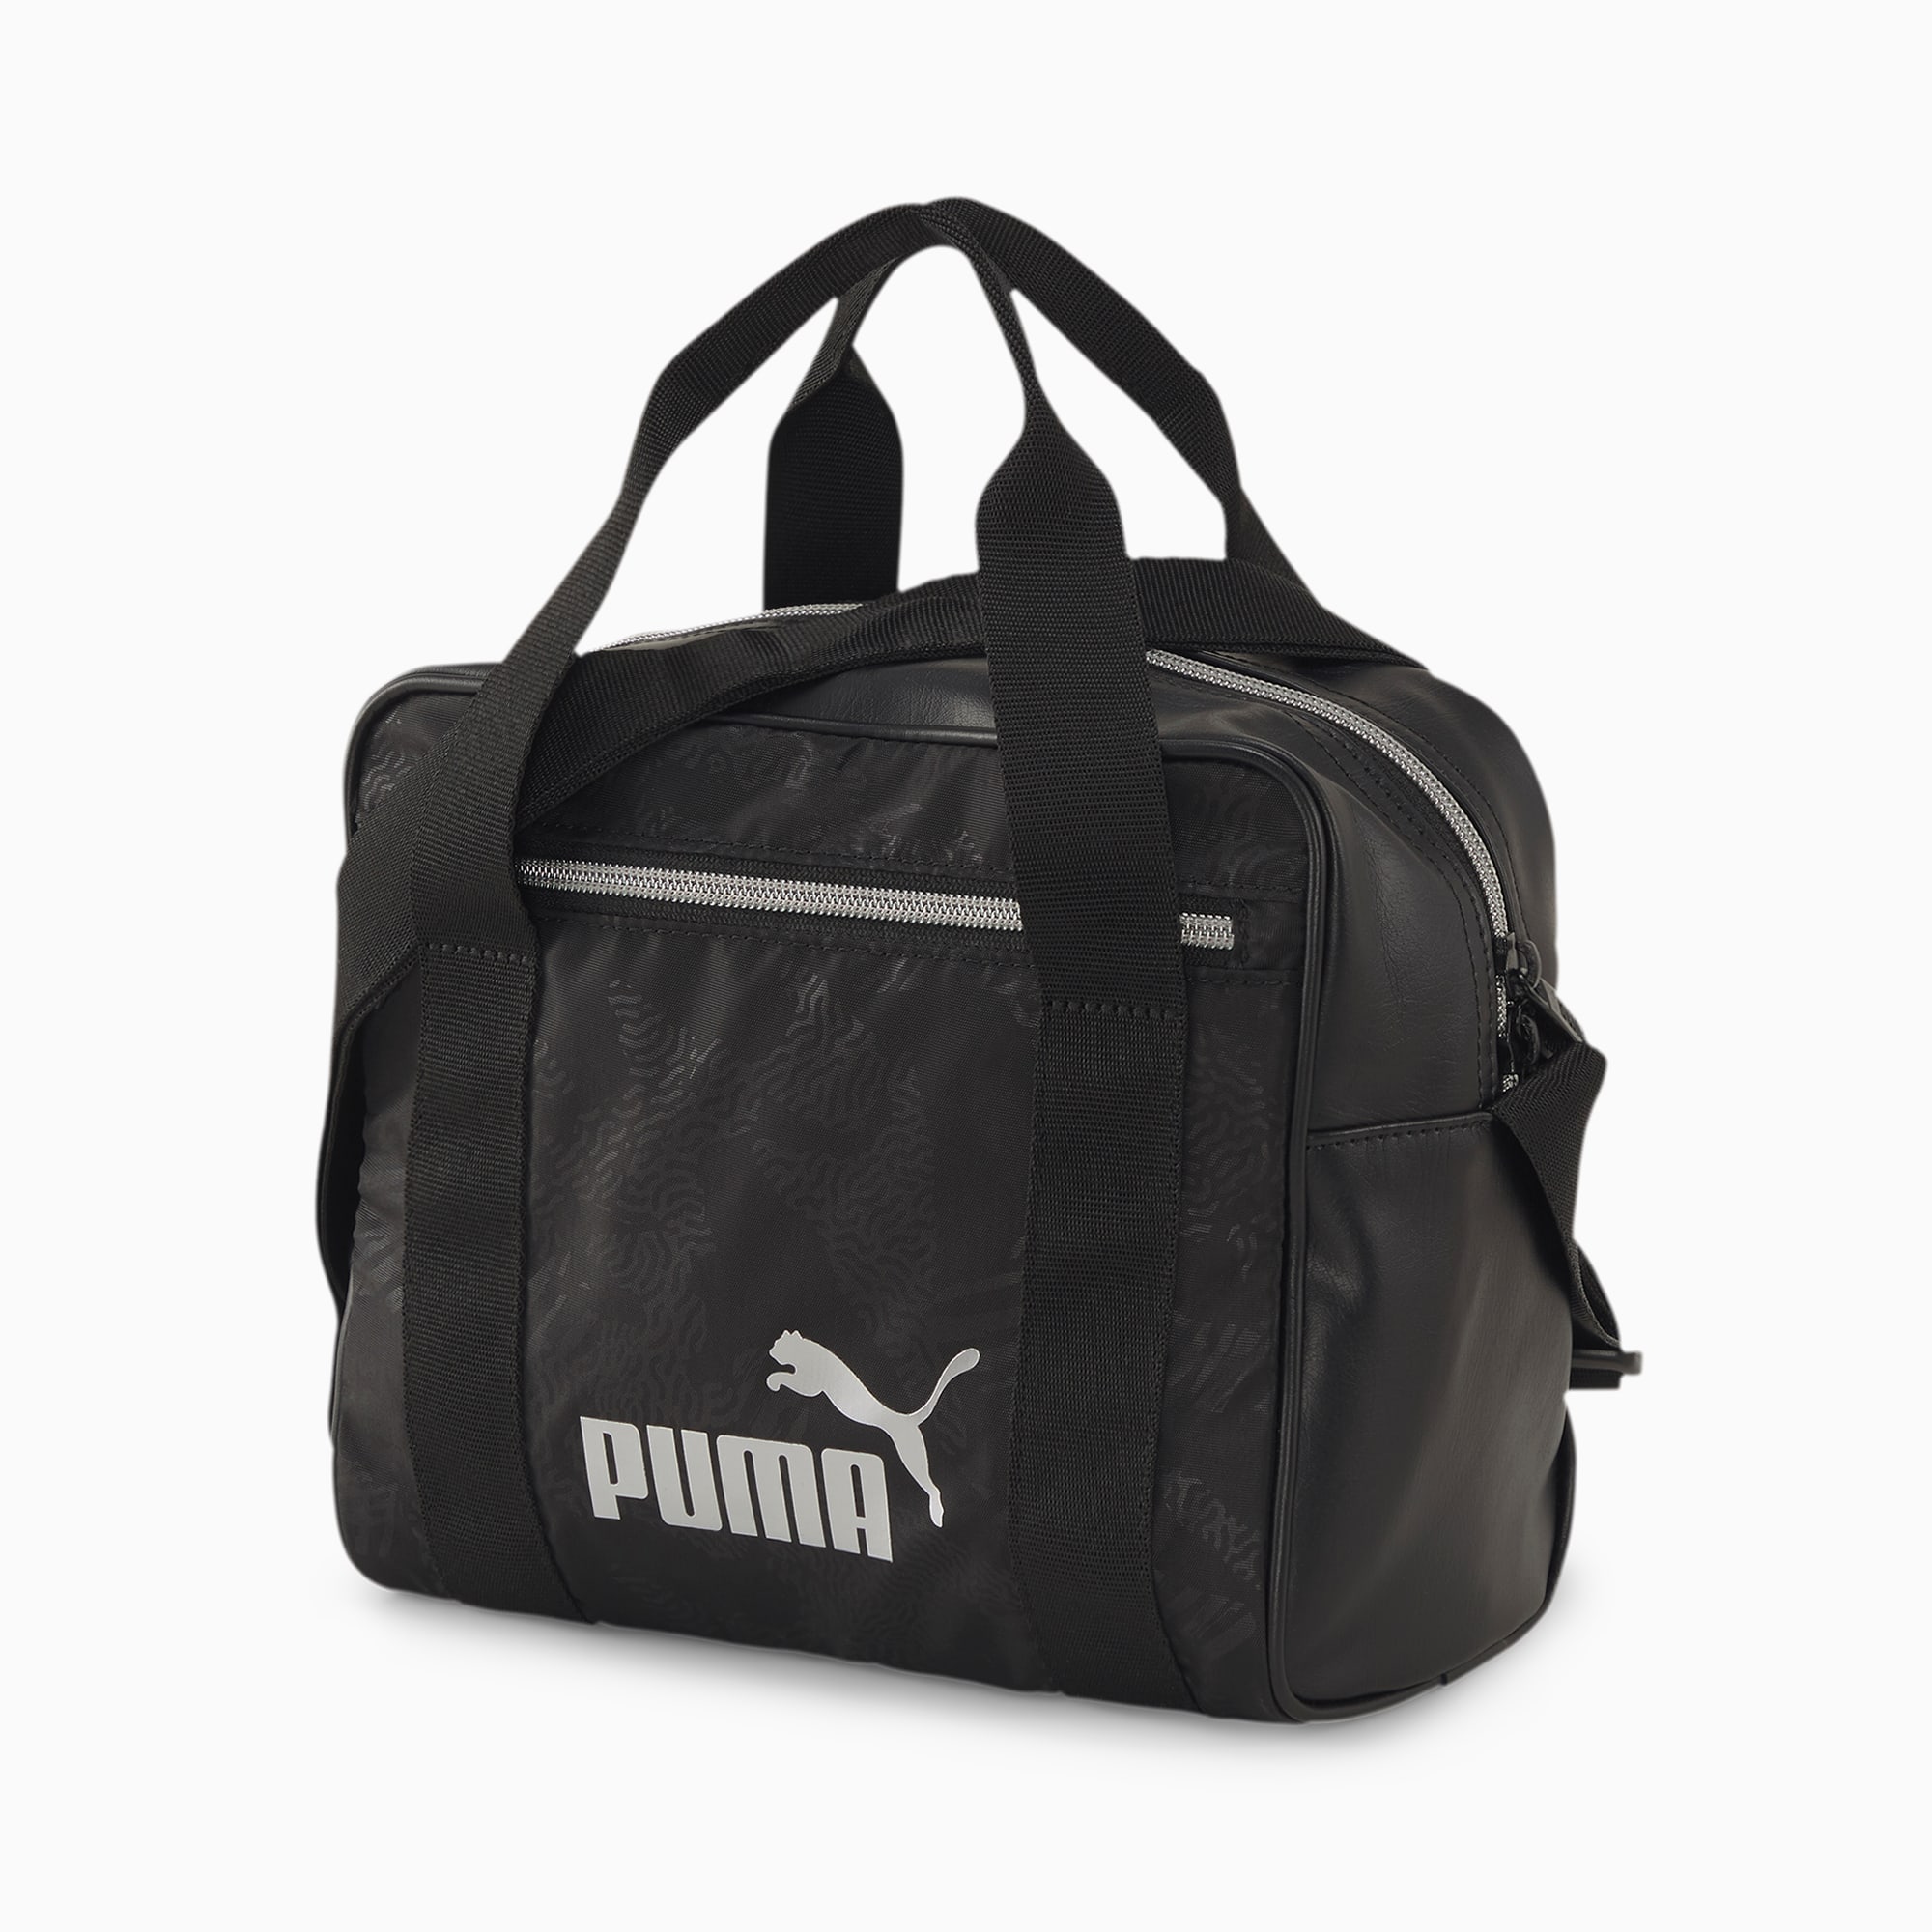 puma women's duffel bags